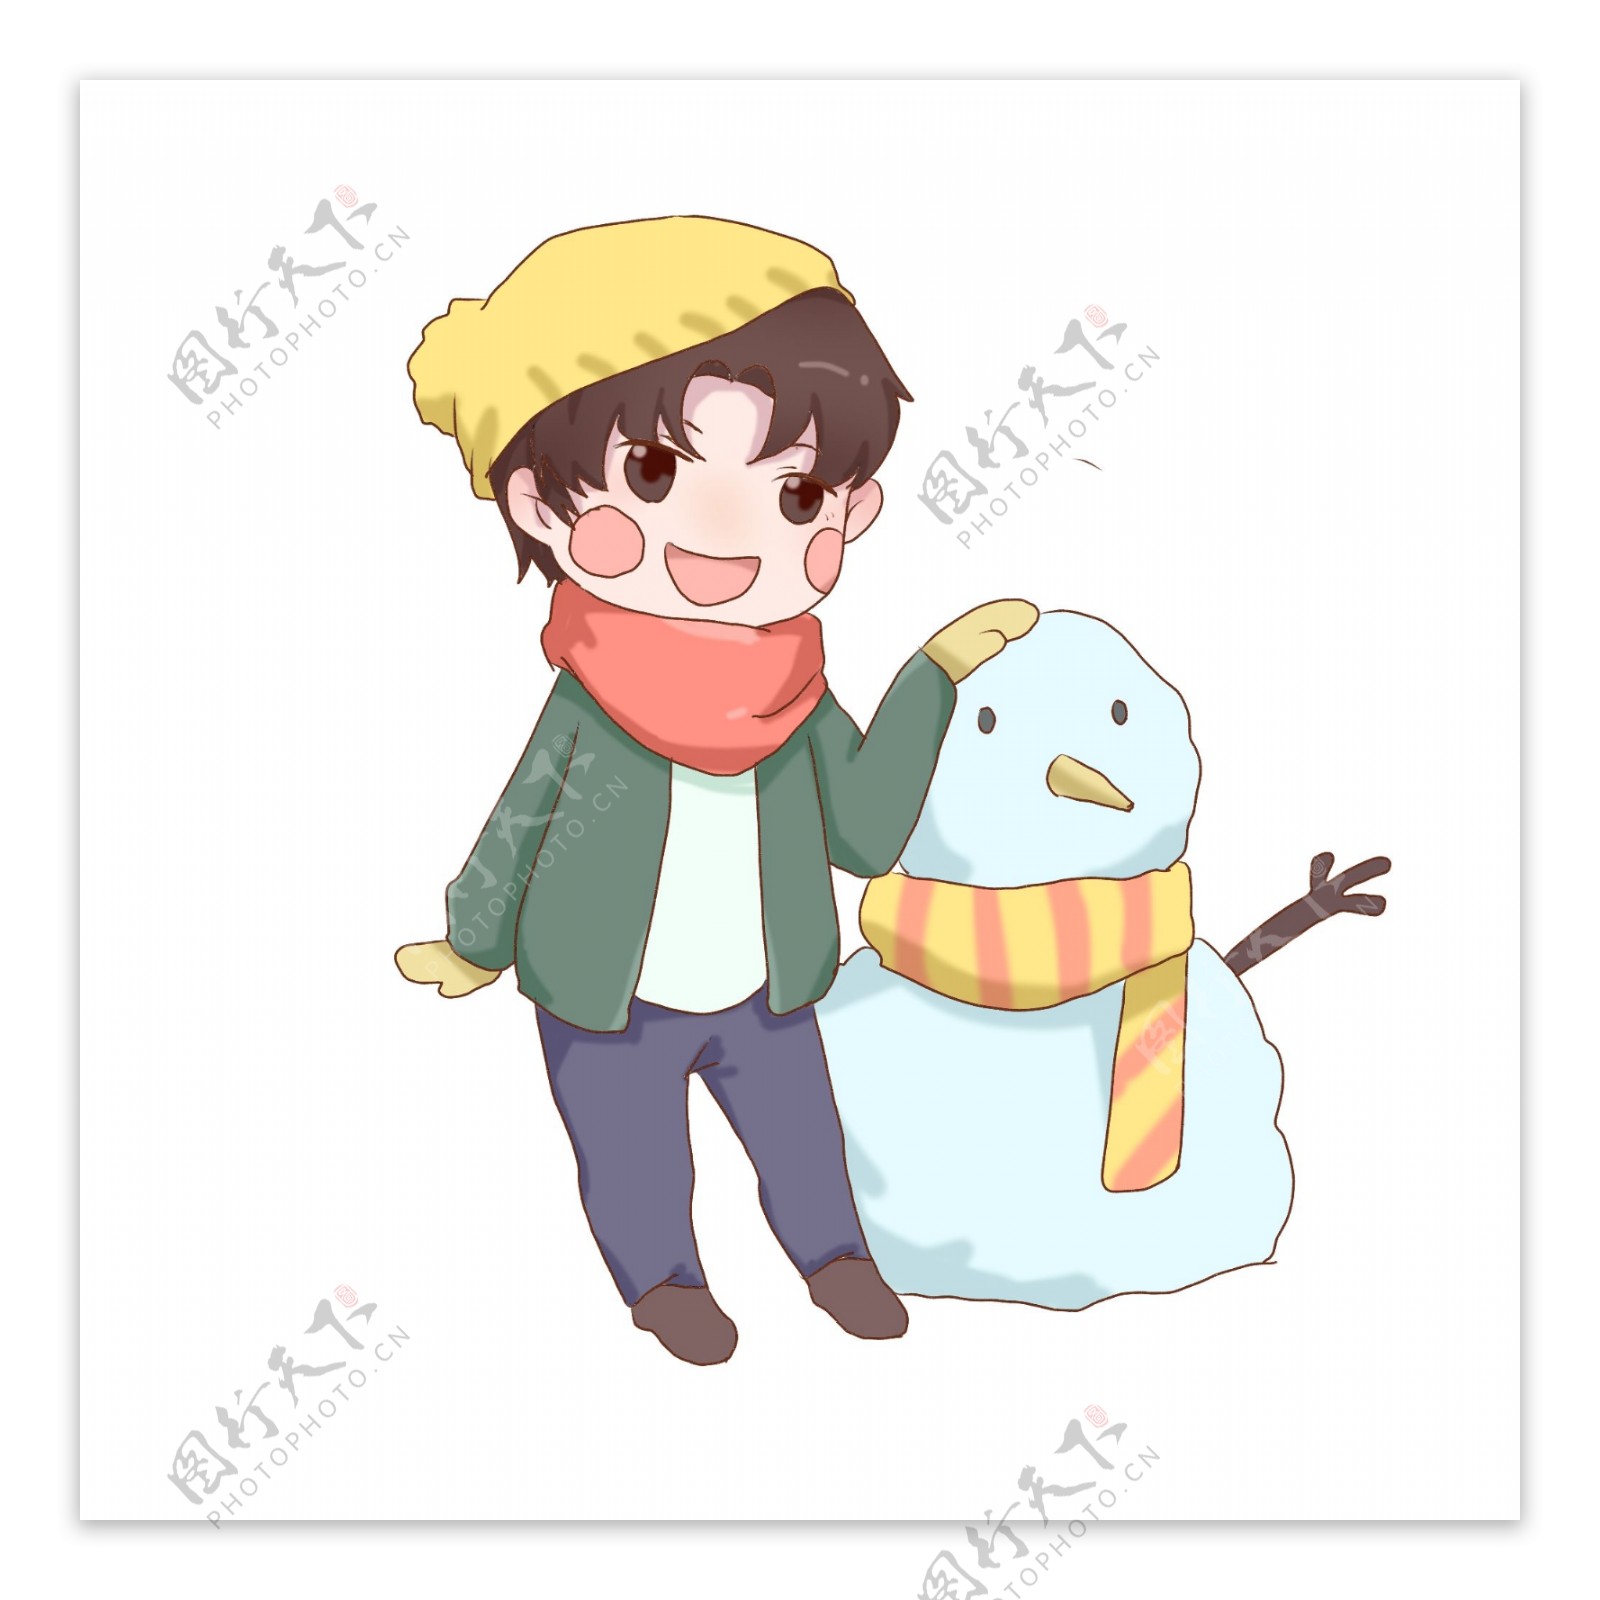 立冬时节带黄帽子的男孩与雪人合影